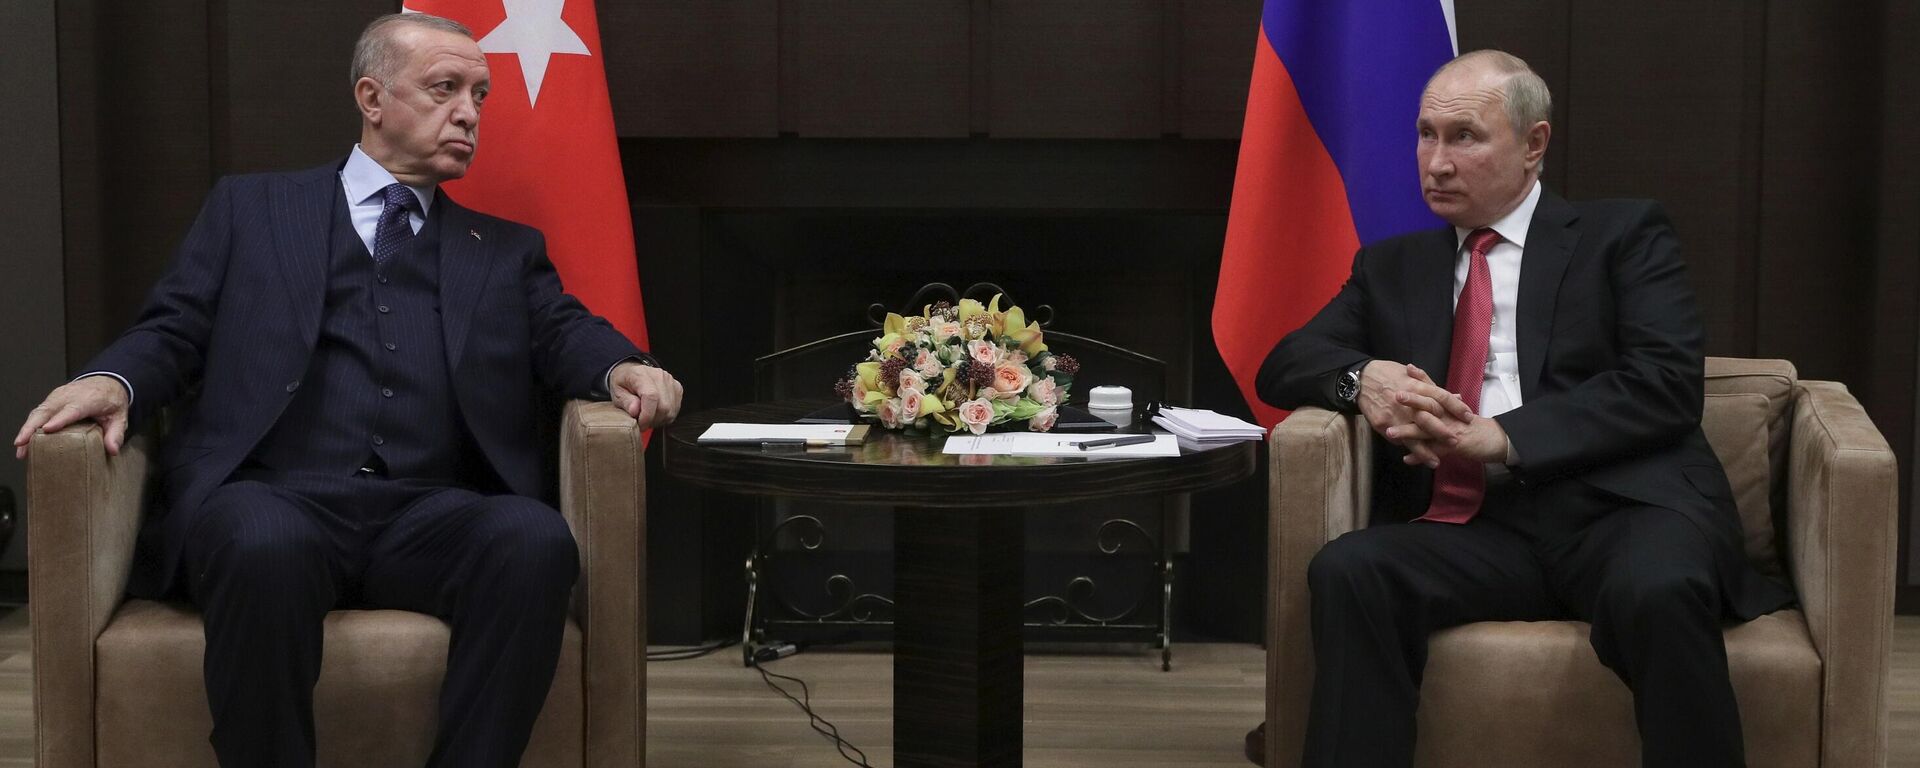 Президент РФ В. Путин провел переговоры с президентом Турции Р. Эрдоганом - Sputnik Таджикистан, 1920, 05.10.2021